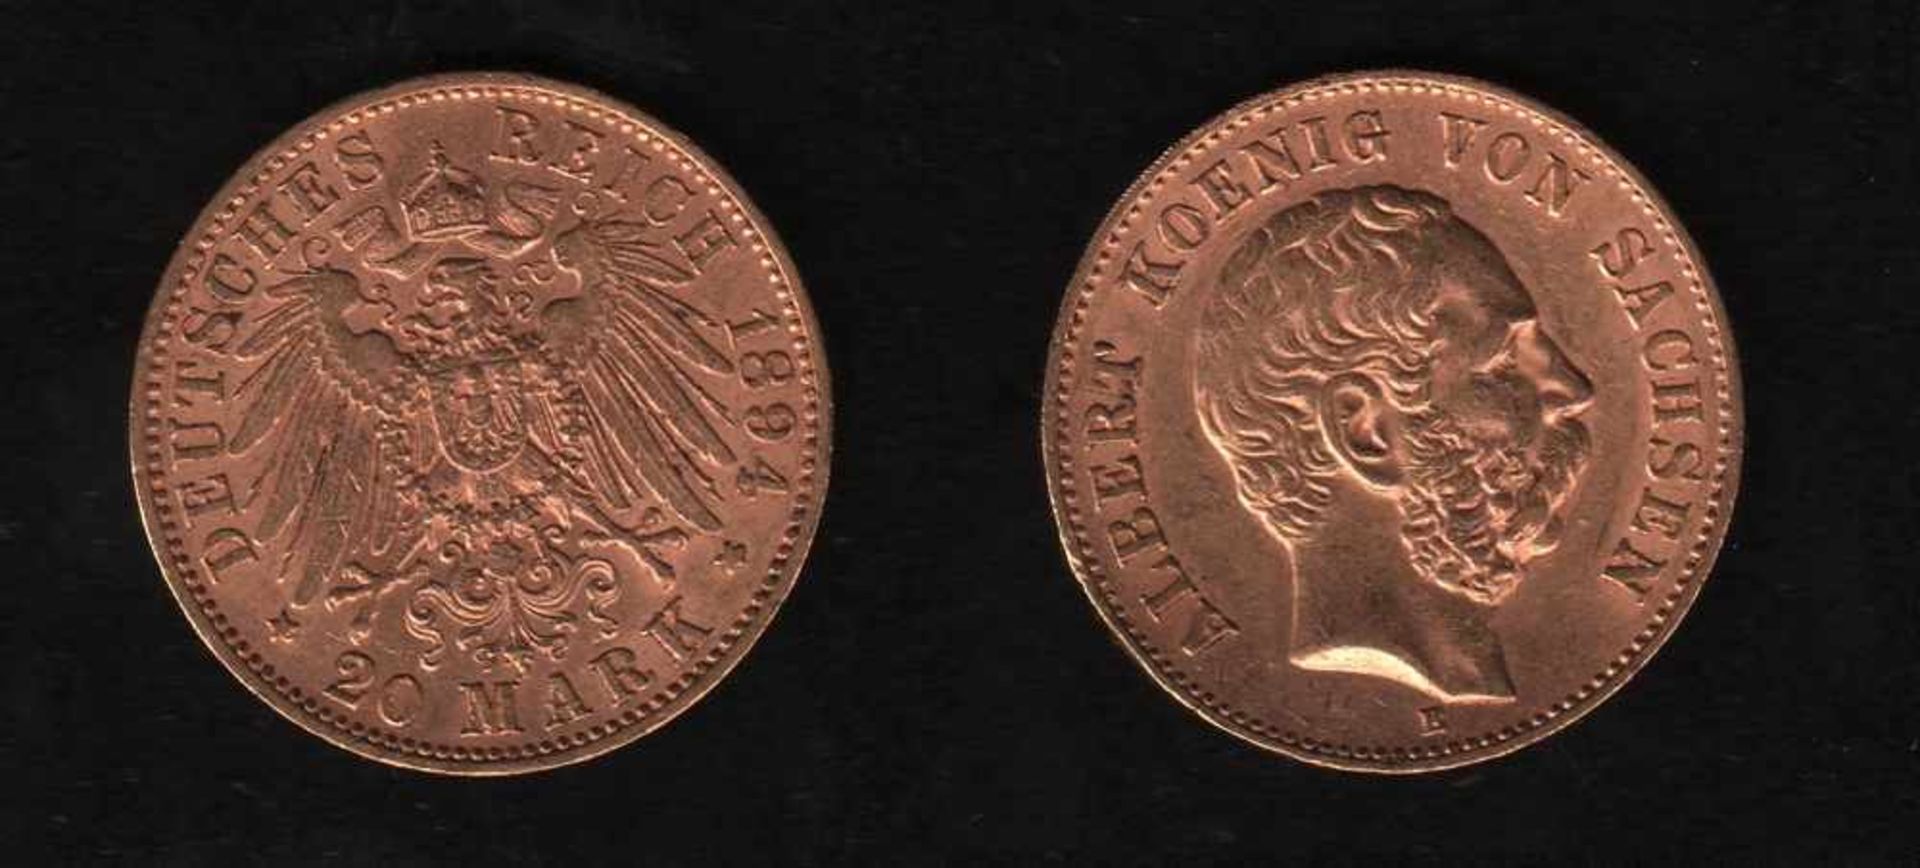 Deutsches Reich. Goldmünze.20 Mark. Albert, König von Sachsen. E 1894. Vorderseite: Porträt König